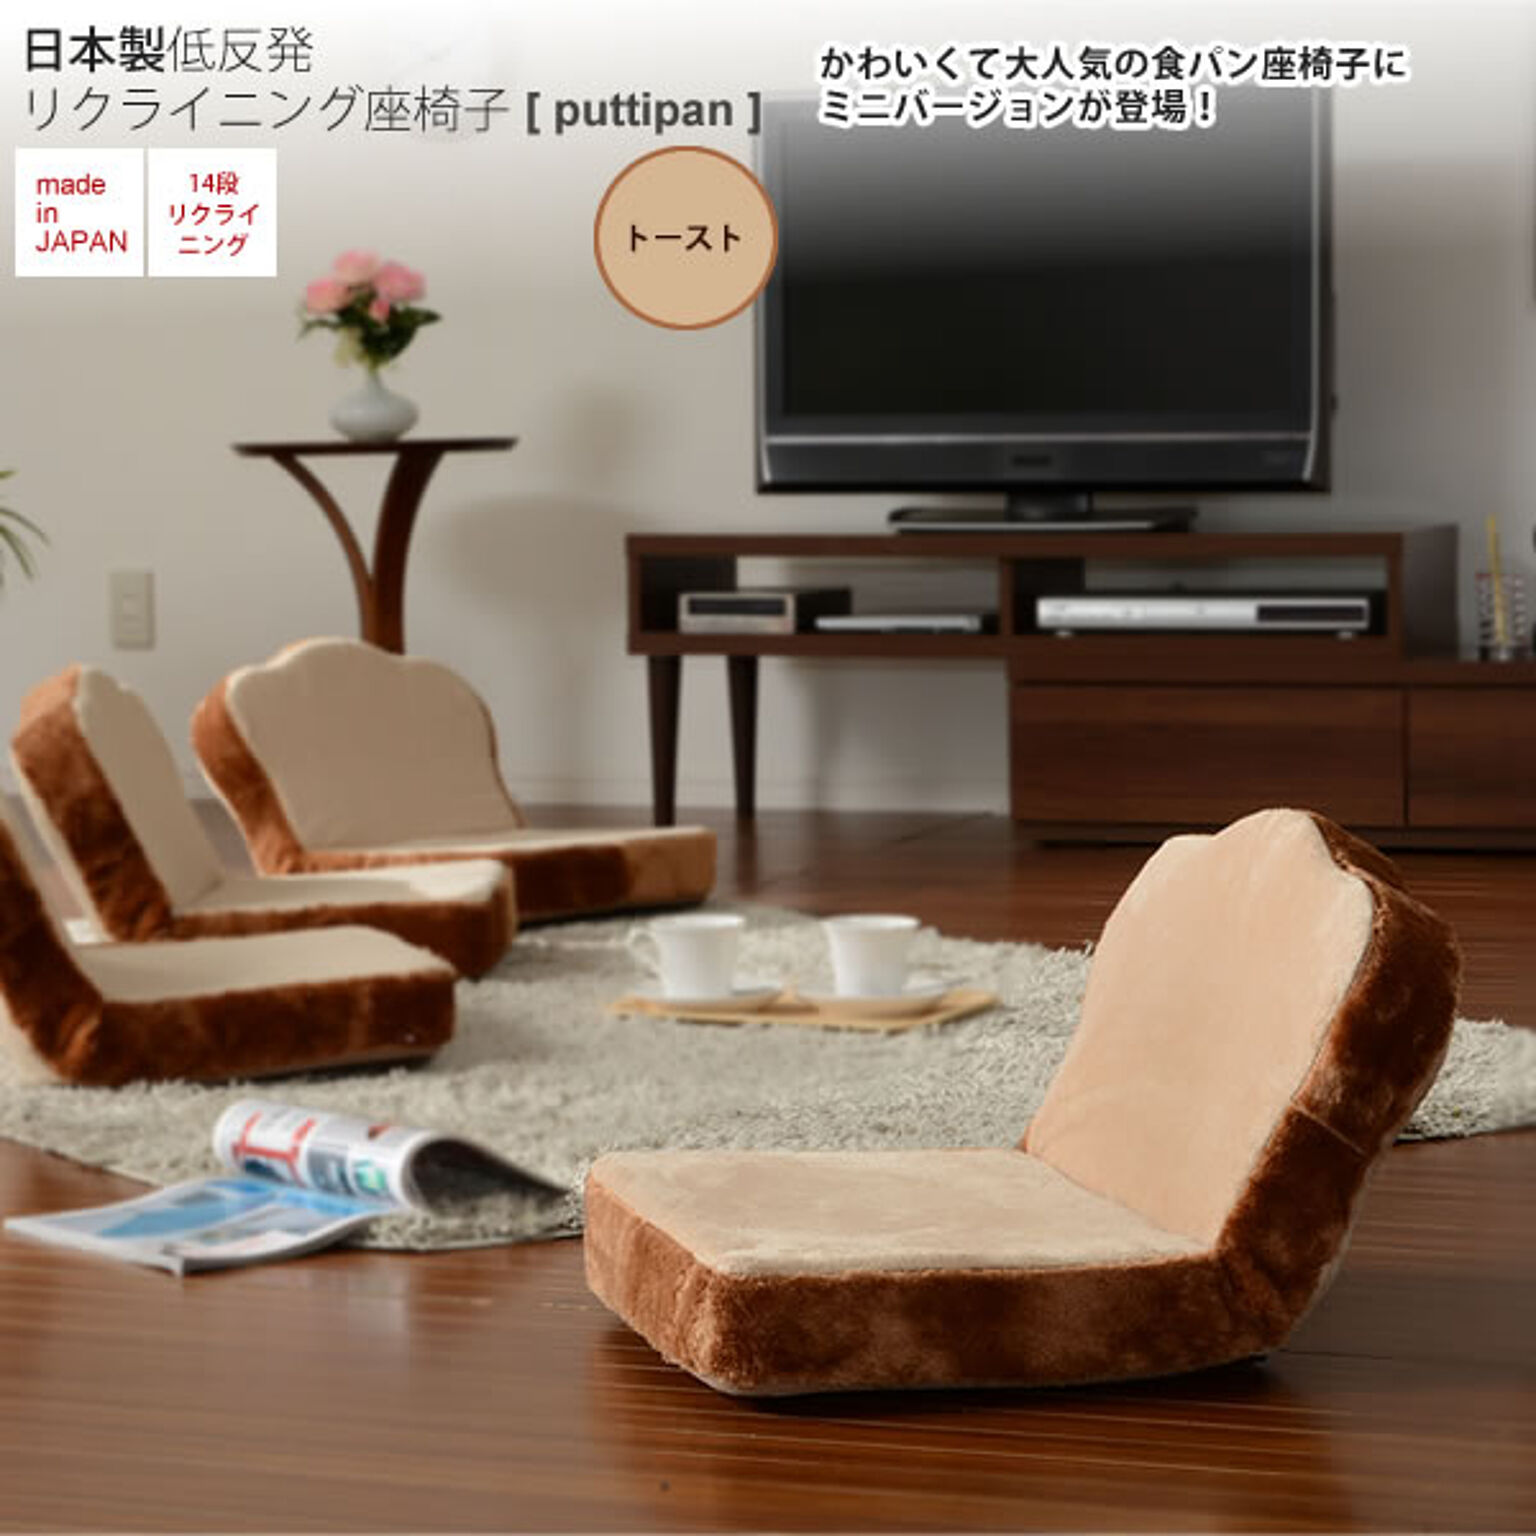 トーストタイプ ： 日本製低反発リクライニング座椅子 食パンぷち【puttipan】 フロアチェアー いす イス 食パン トースト ブレッド ミニタイプ 